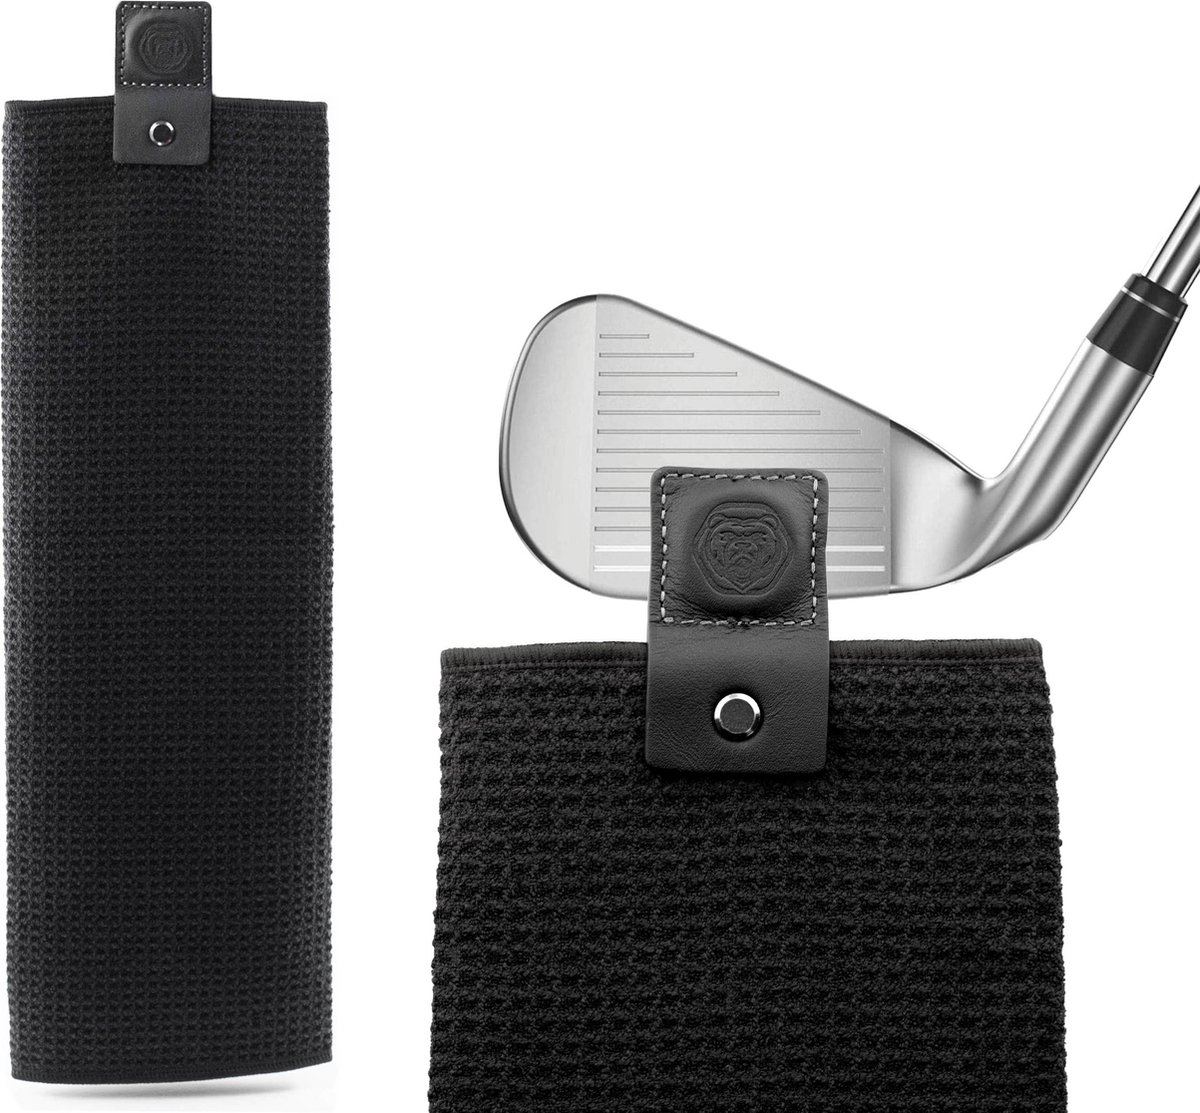 Brute Strength - Golf handdoek - 1 stuk - golfaccessoires - fitness handdoek - microvezel- sport handdoek - Industriële sterke magneet voor veilige grip op golfkarren of -clubs